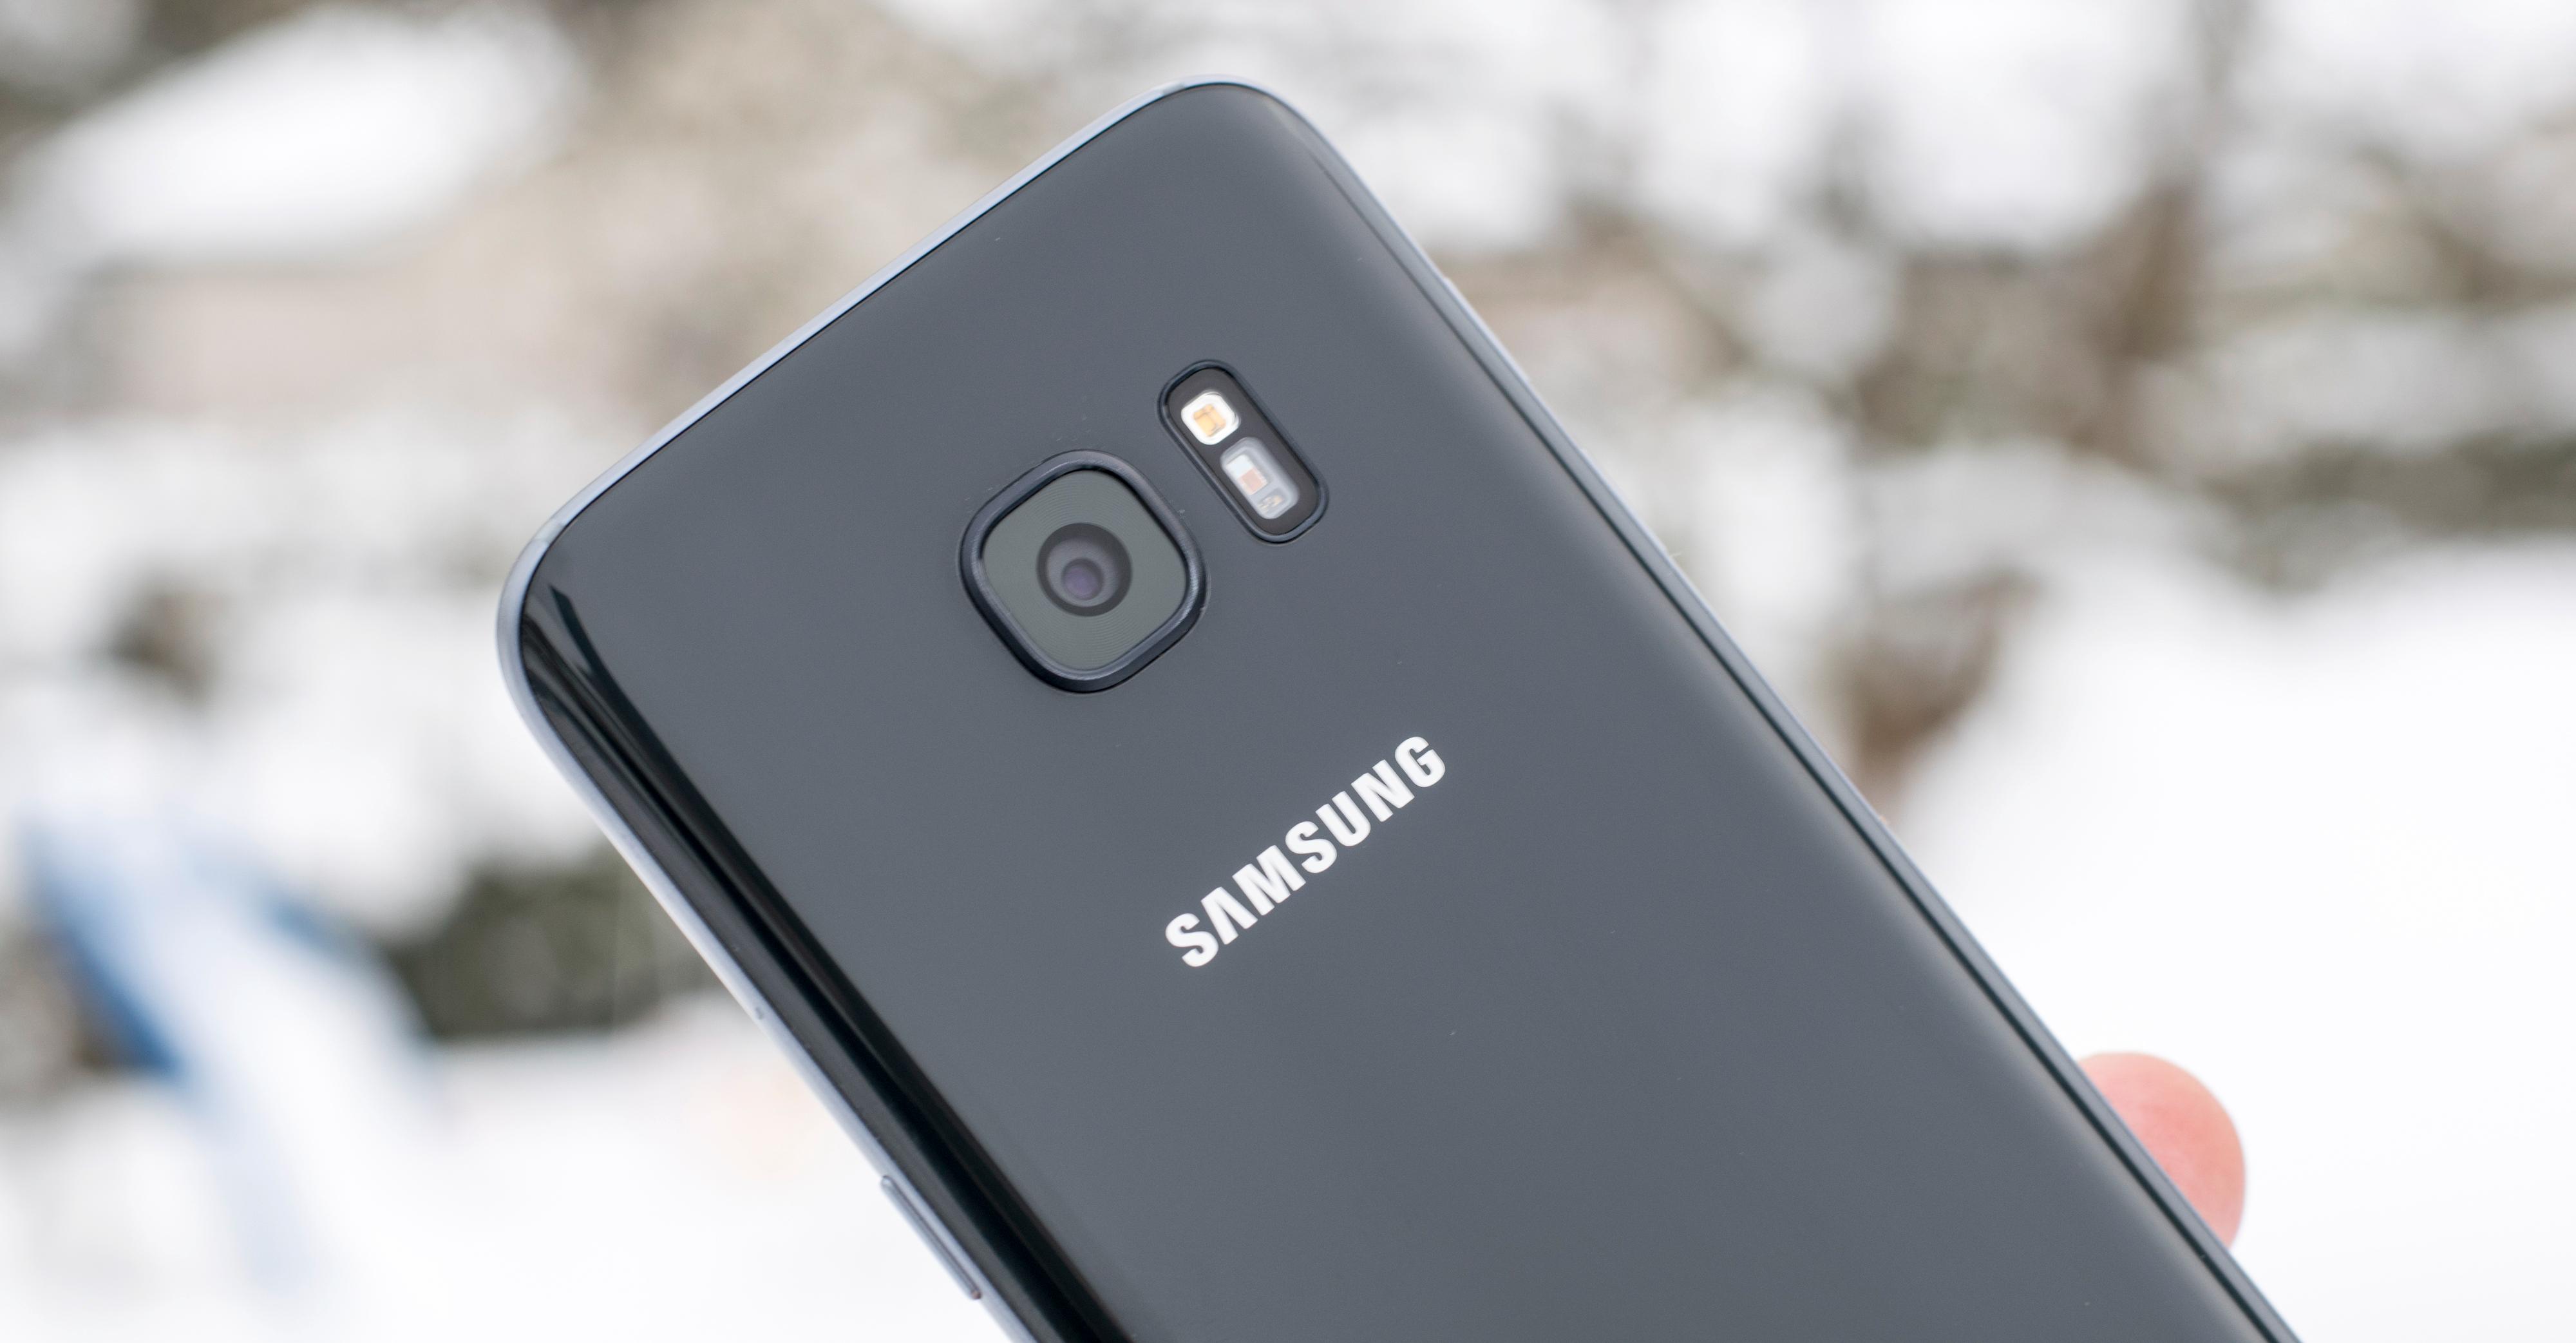 Det du kommer til å sette aller mest pris på med Galaxy S7 er sannsynligvis kameraet.